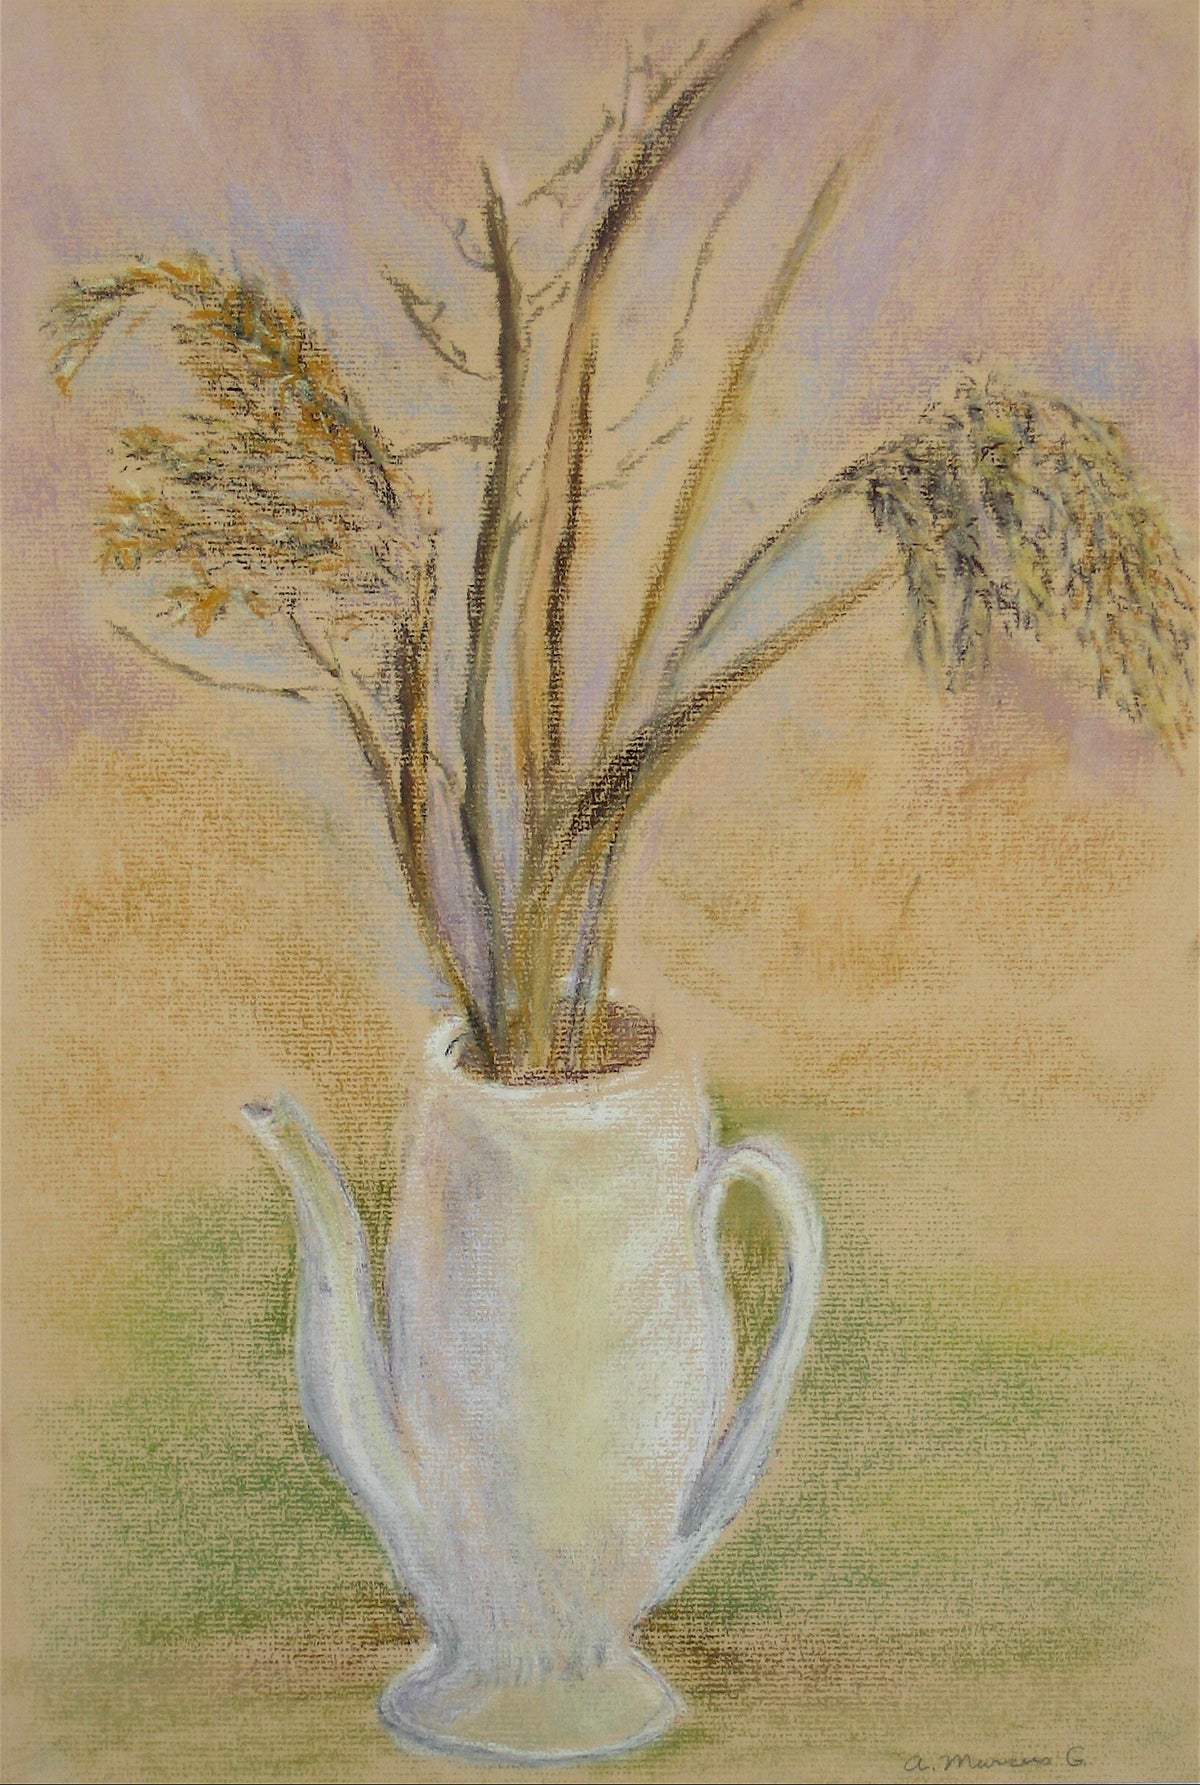 Branches in a Tea Pot&lt;br&gt;Pastel, 1965&lt;br&gt;&lt;br&gt;#15111